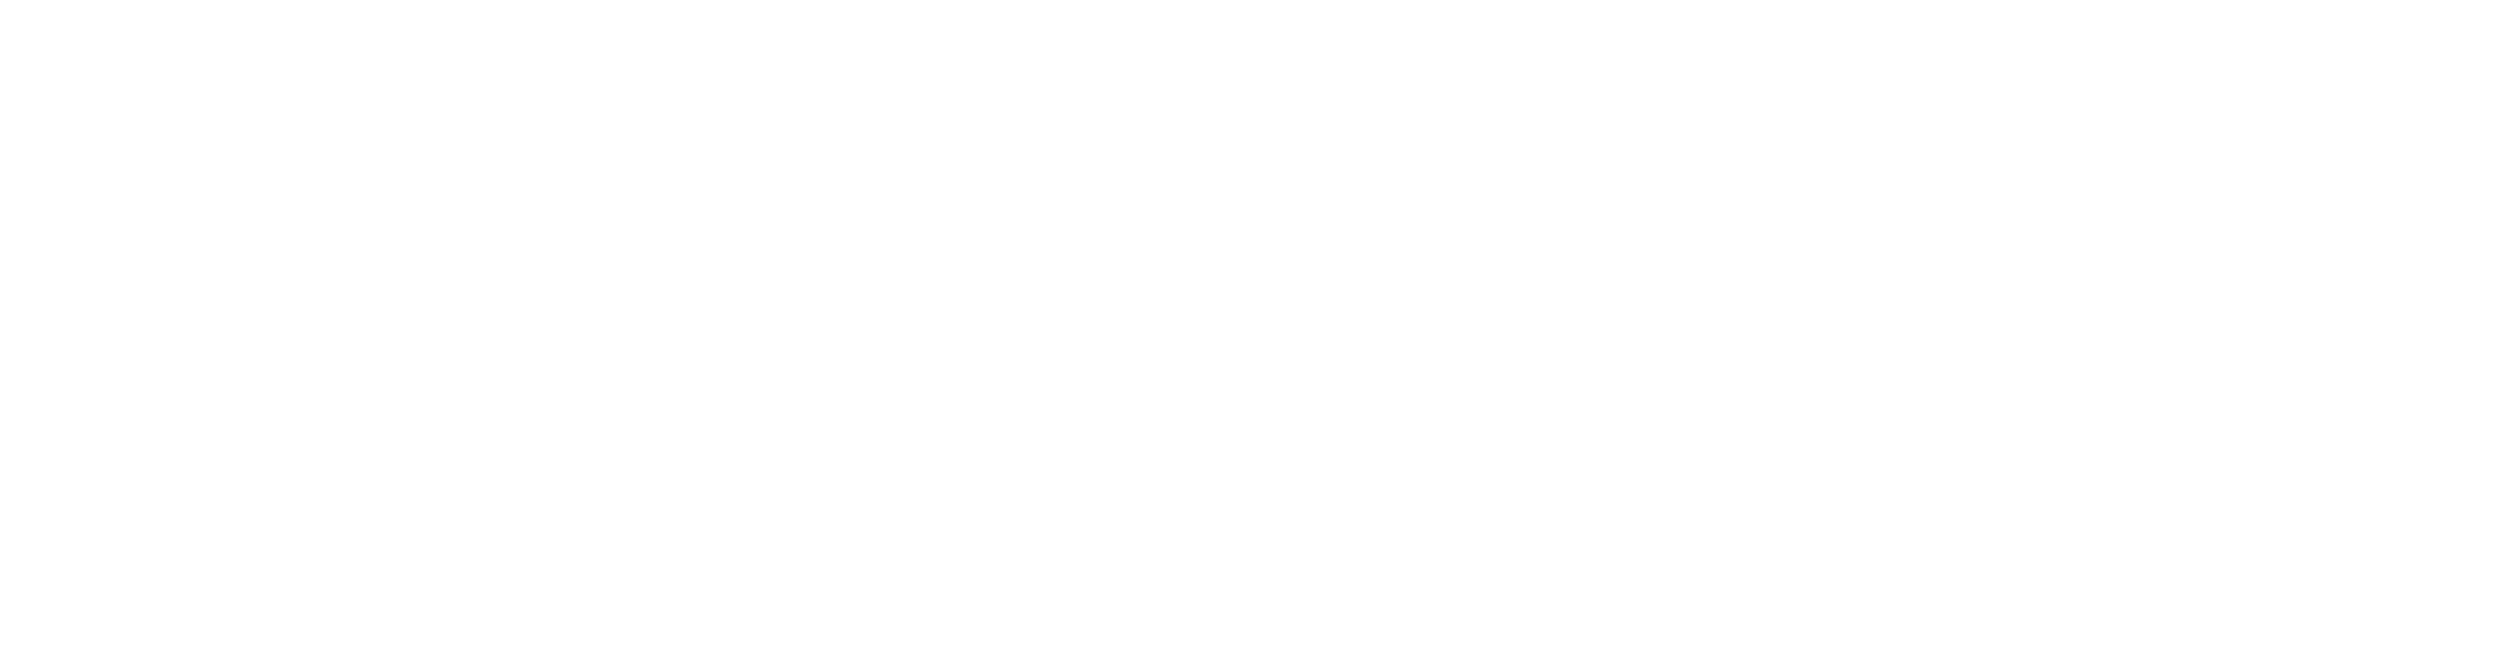 Managing Composites